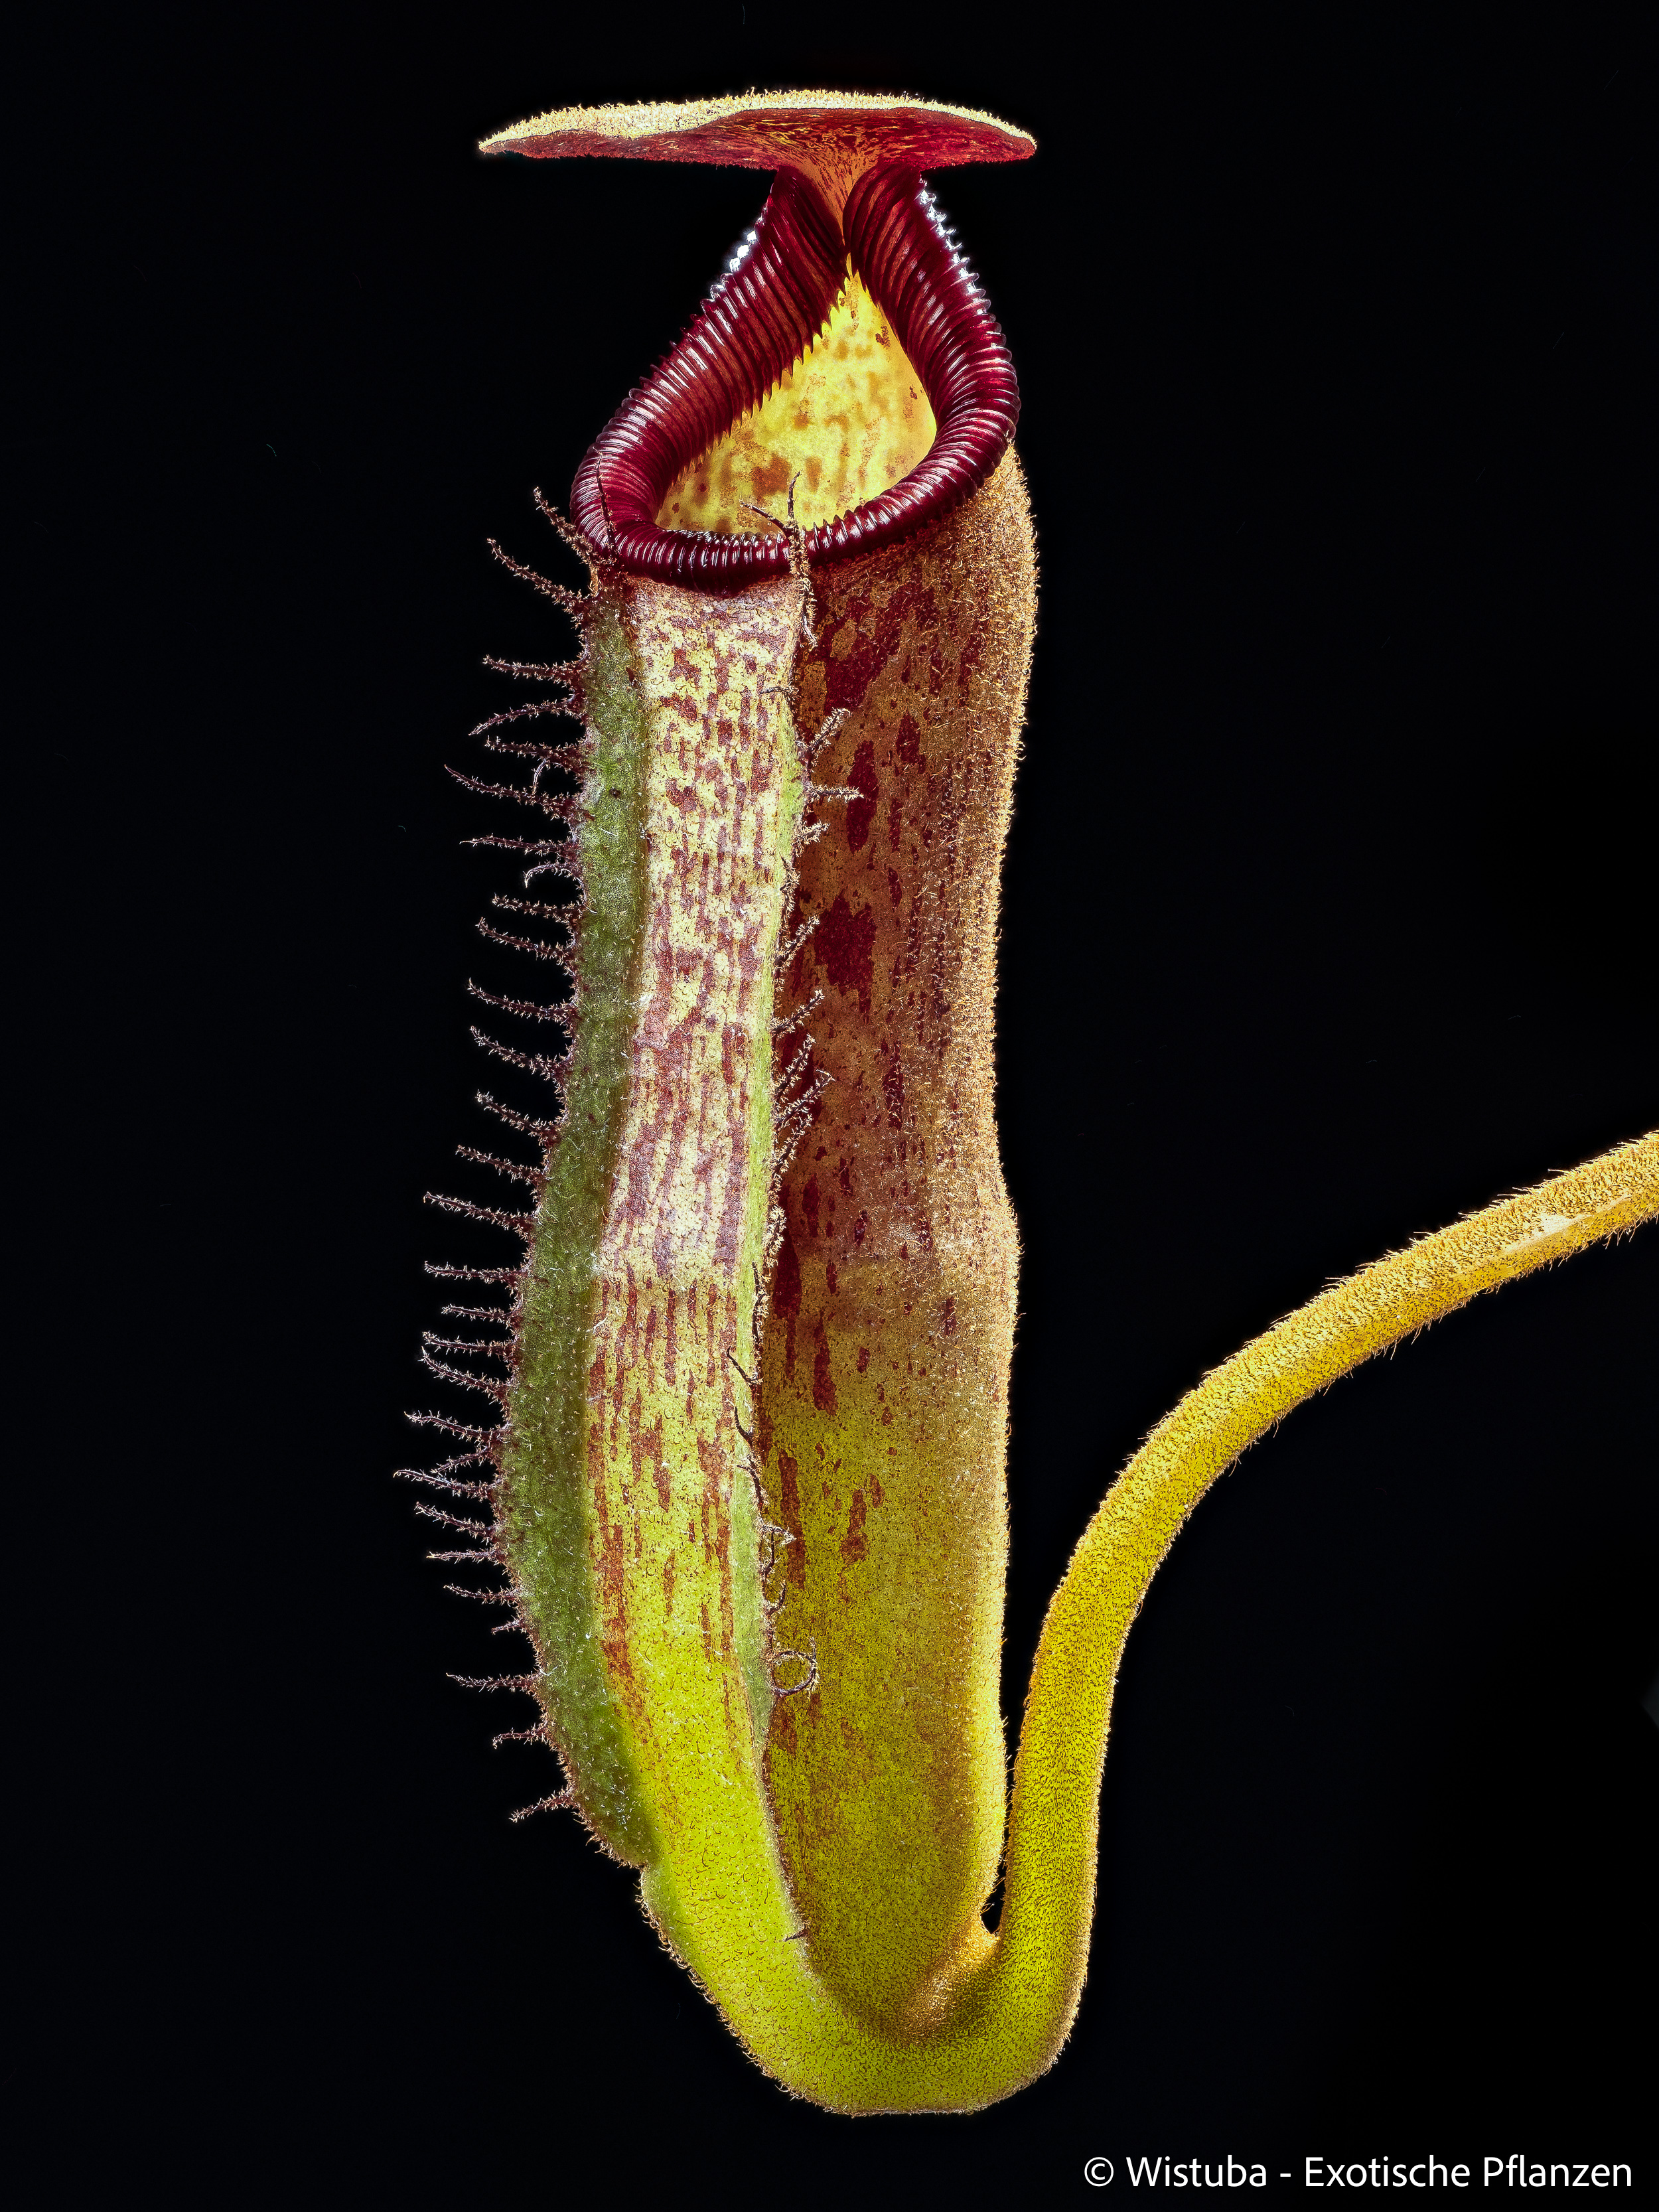 Nepenthes lowii Mulu (clone 7) x klossii